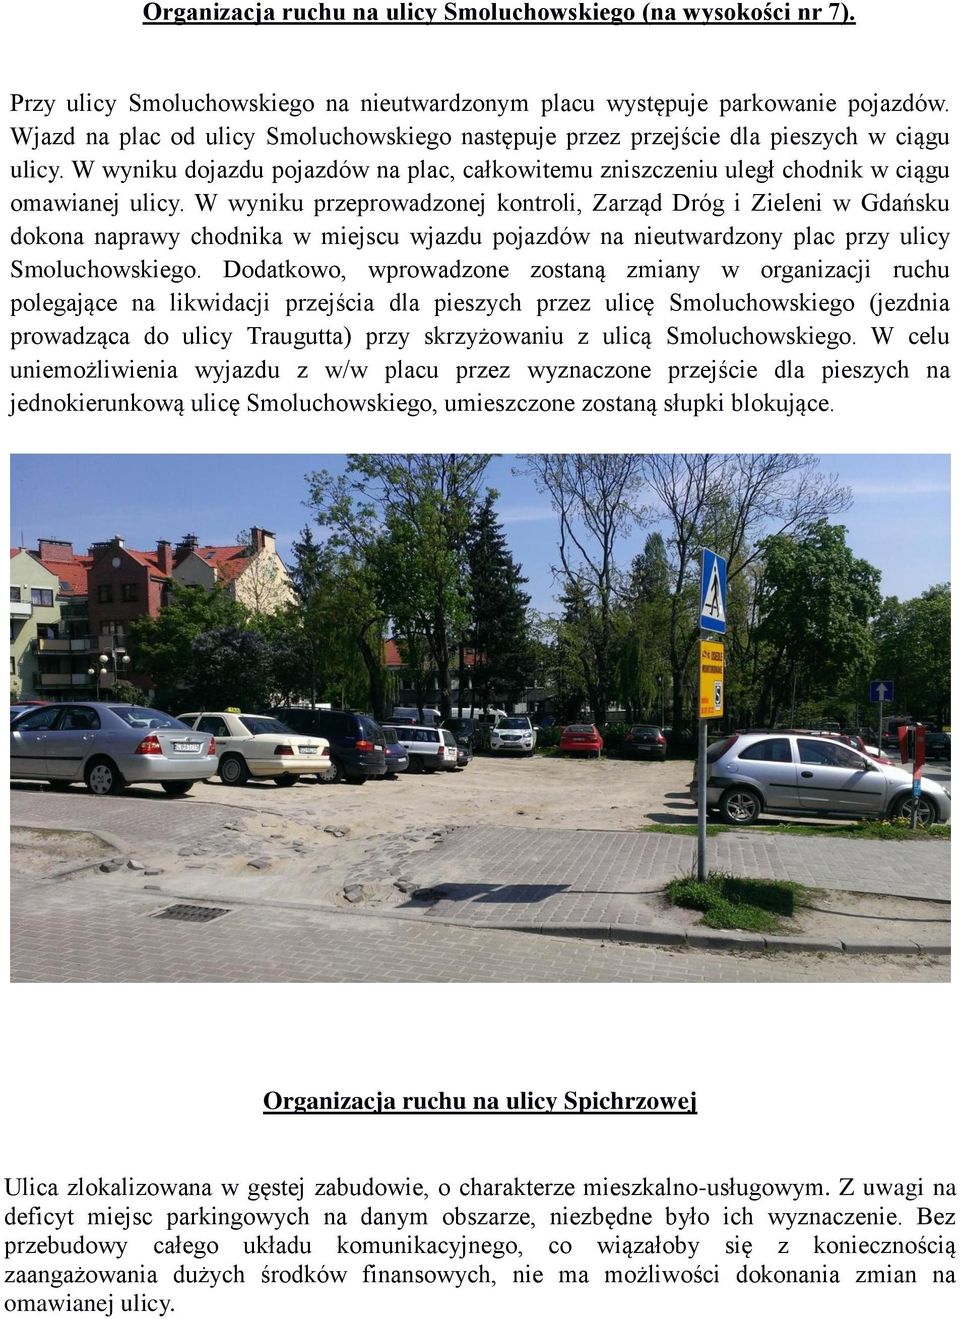 W wyniku przeprowadzonej kontroli, Zarząd Dróg i Zieleni w Gdańsku dokona naprawy chodnika w miejscu wjazdu pojazdów na nieutwardzony plac przy ulicy Smoluchowskiego.